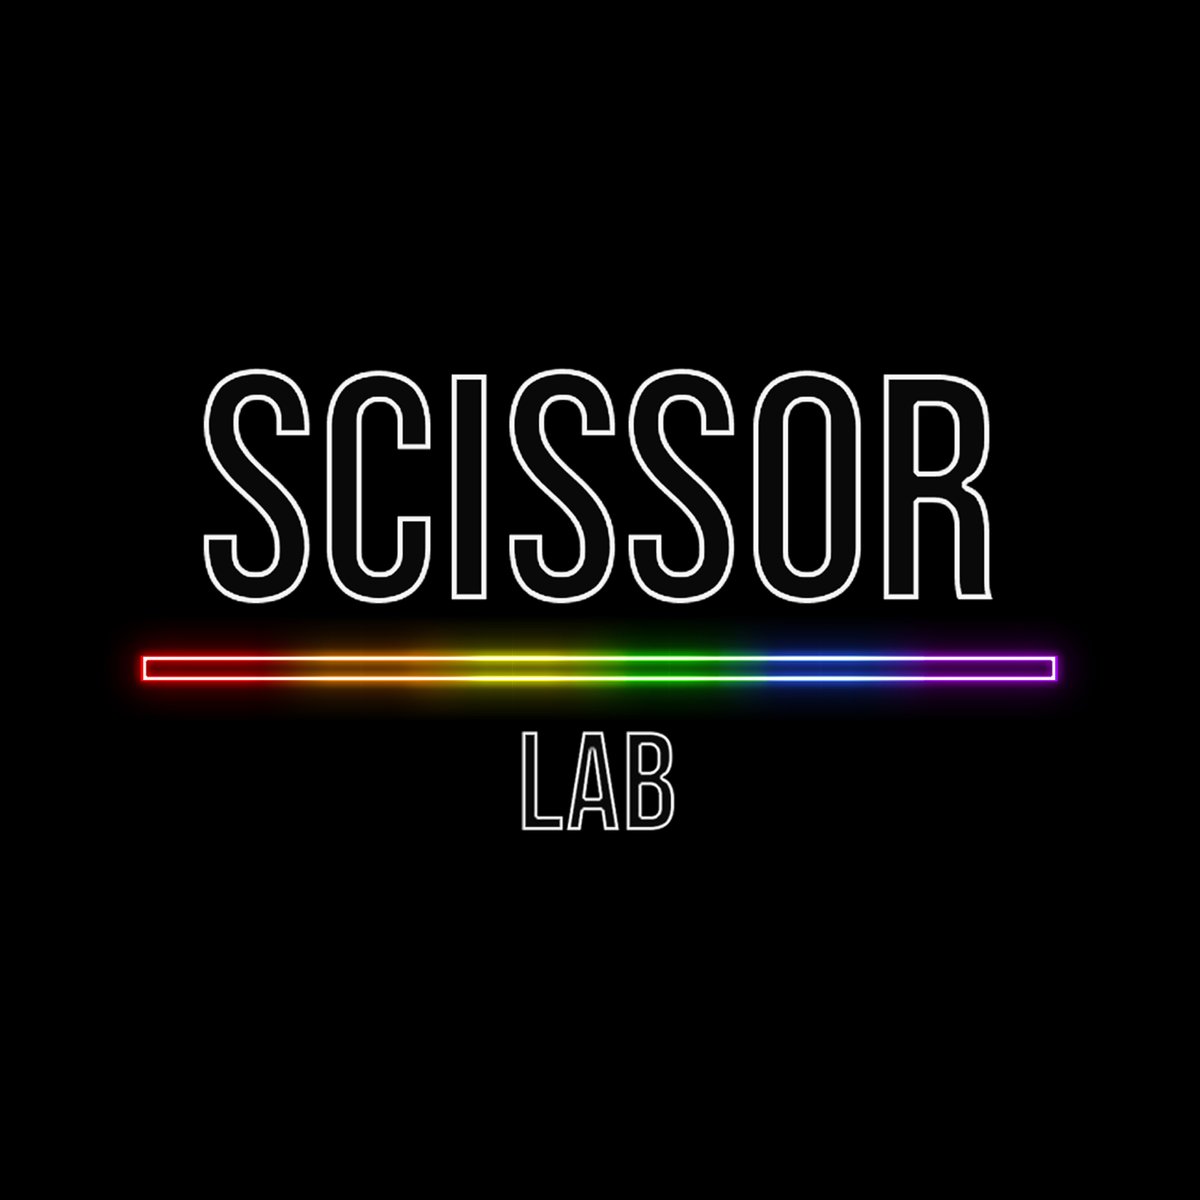 Scissor Lab